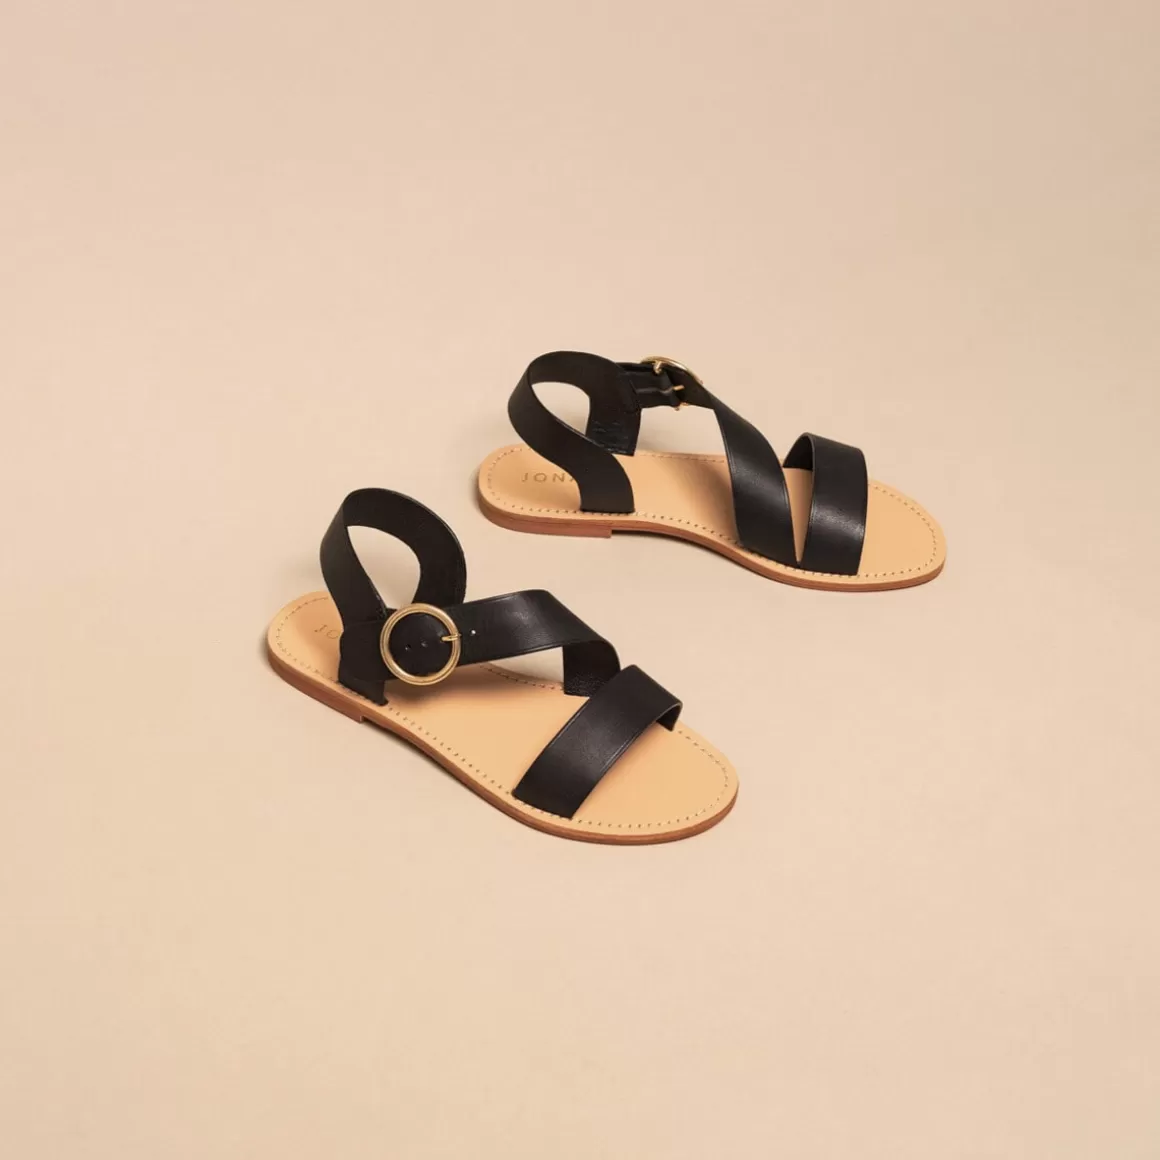 Asymmetrical sandals<Jonak Fashion